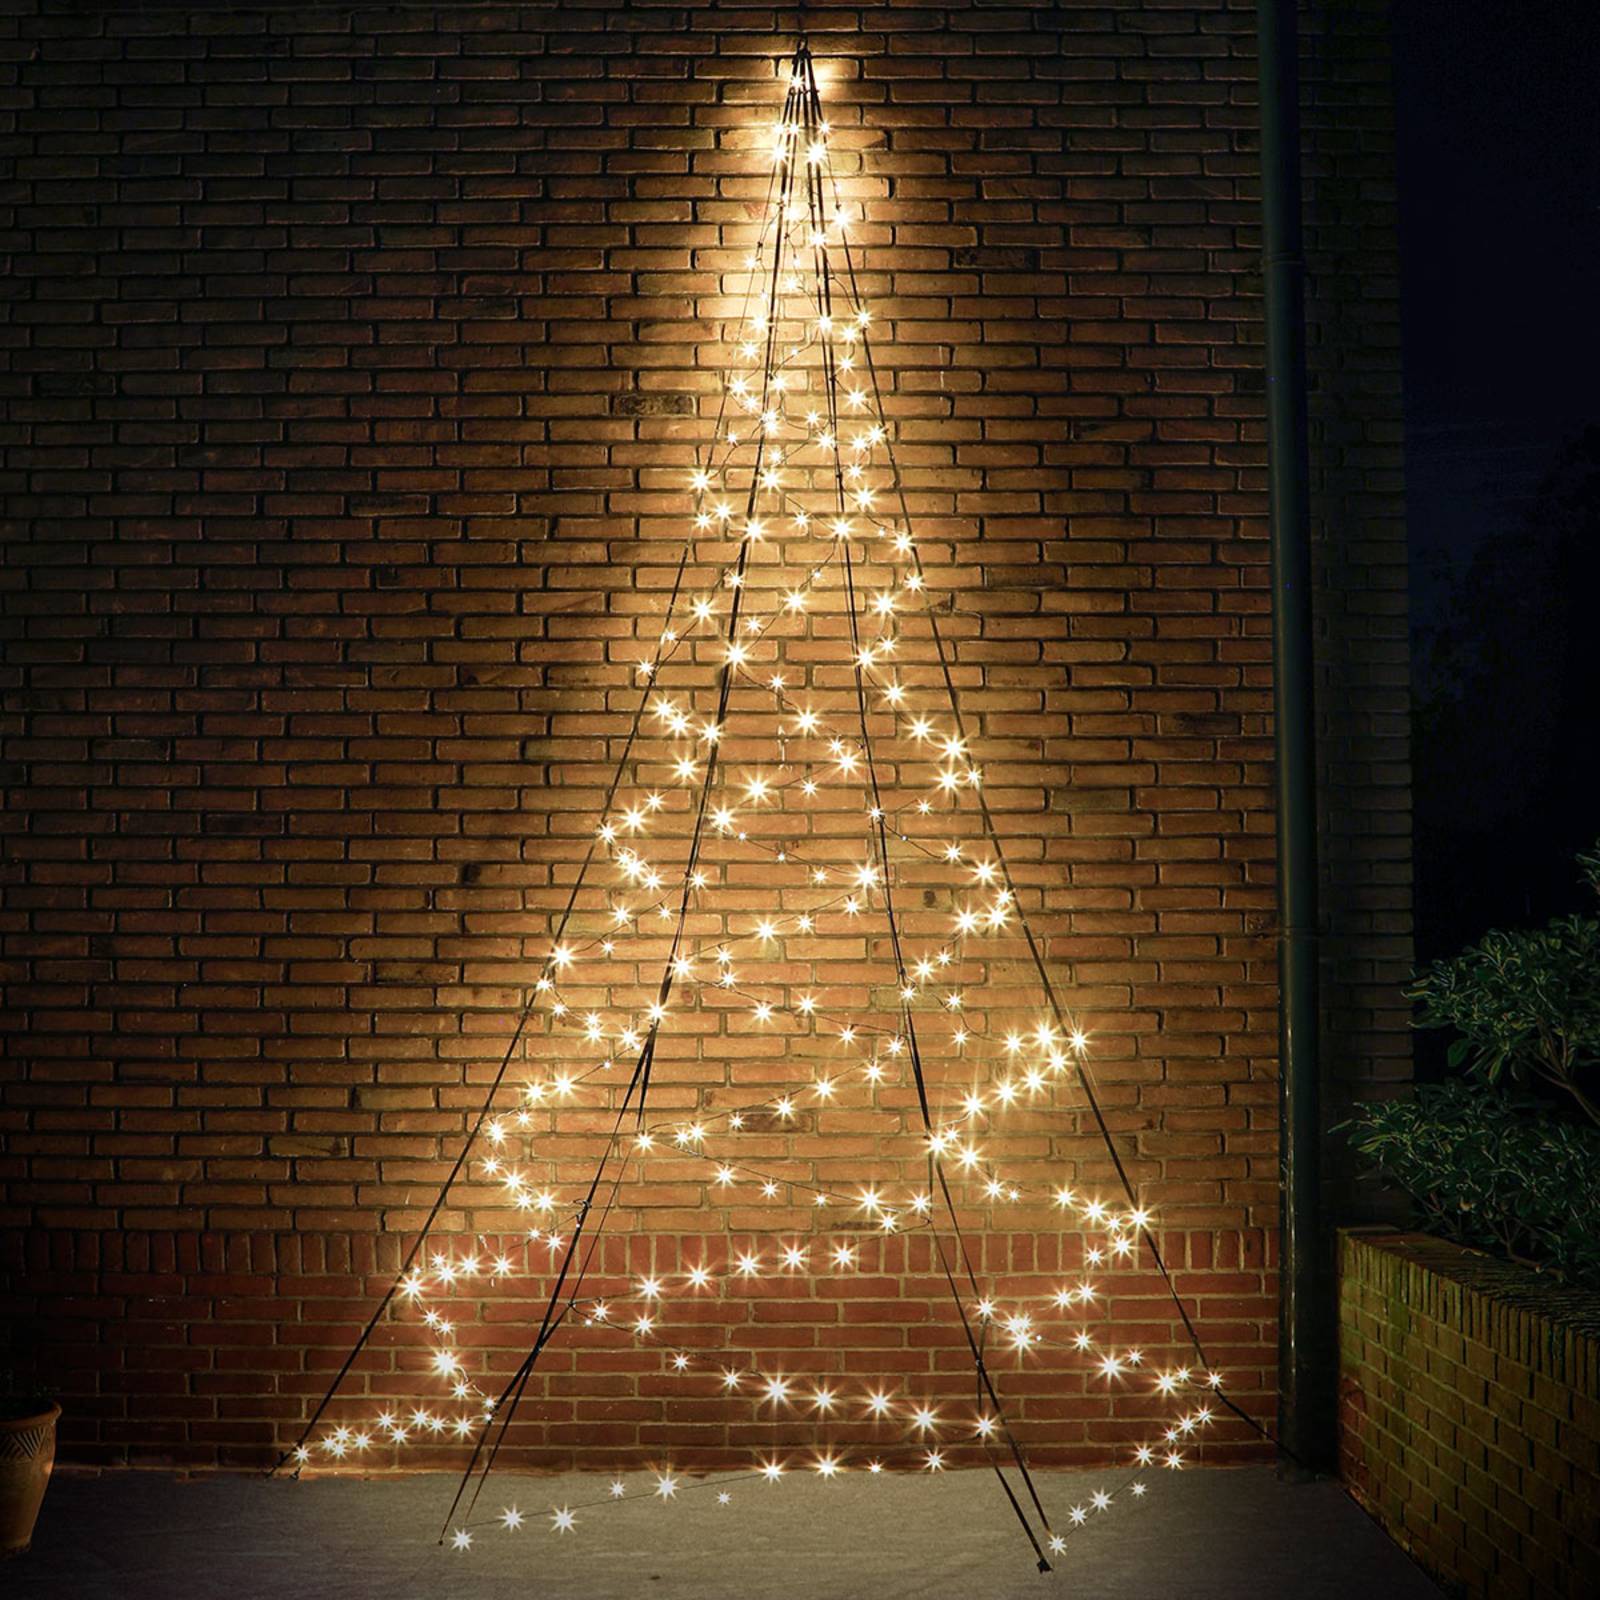 Wand-Weihnachtsbaum Fairybell - 4 m hoch